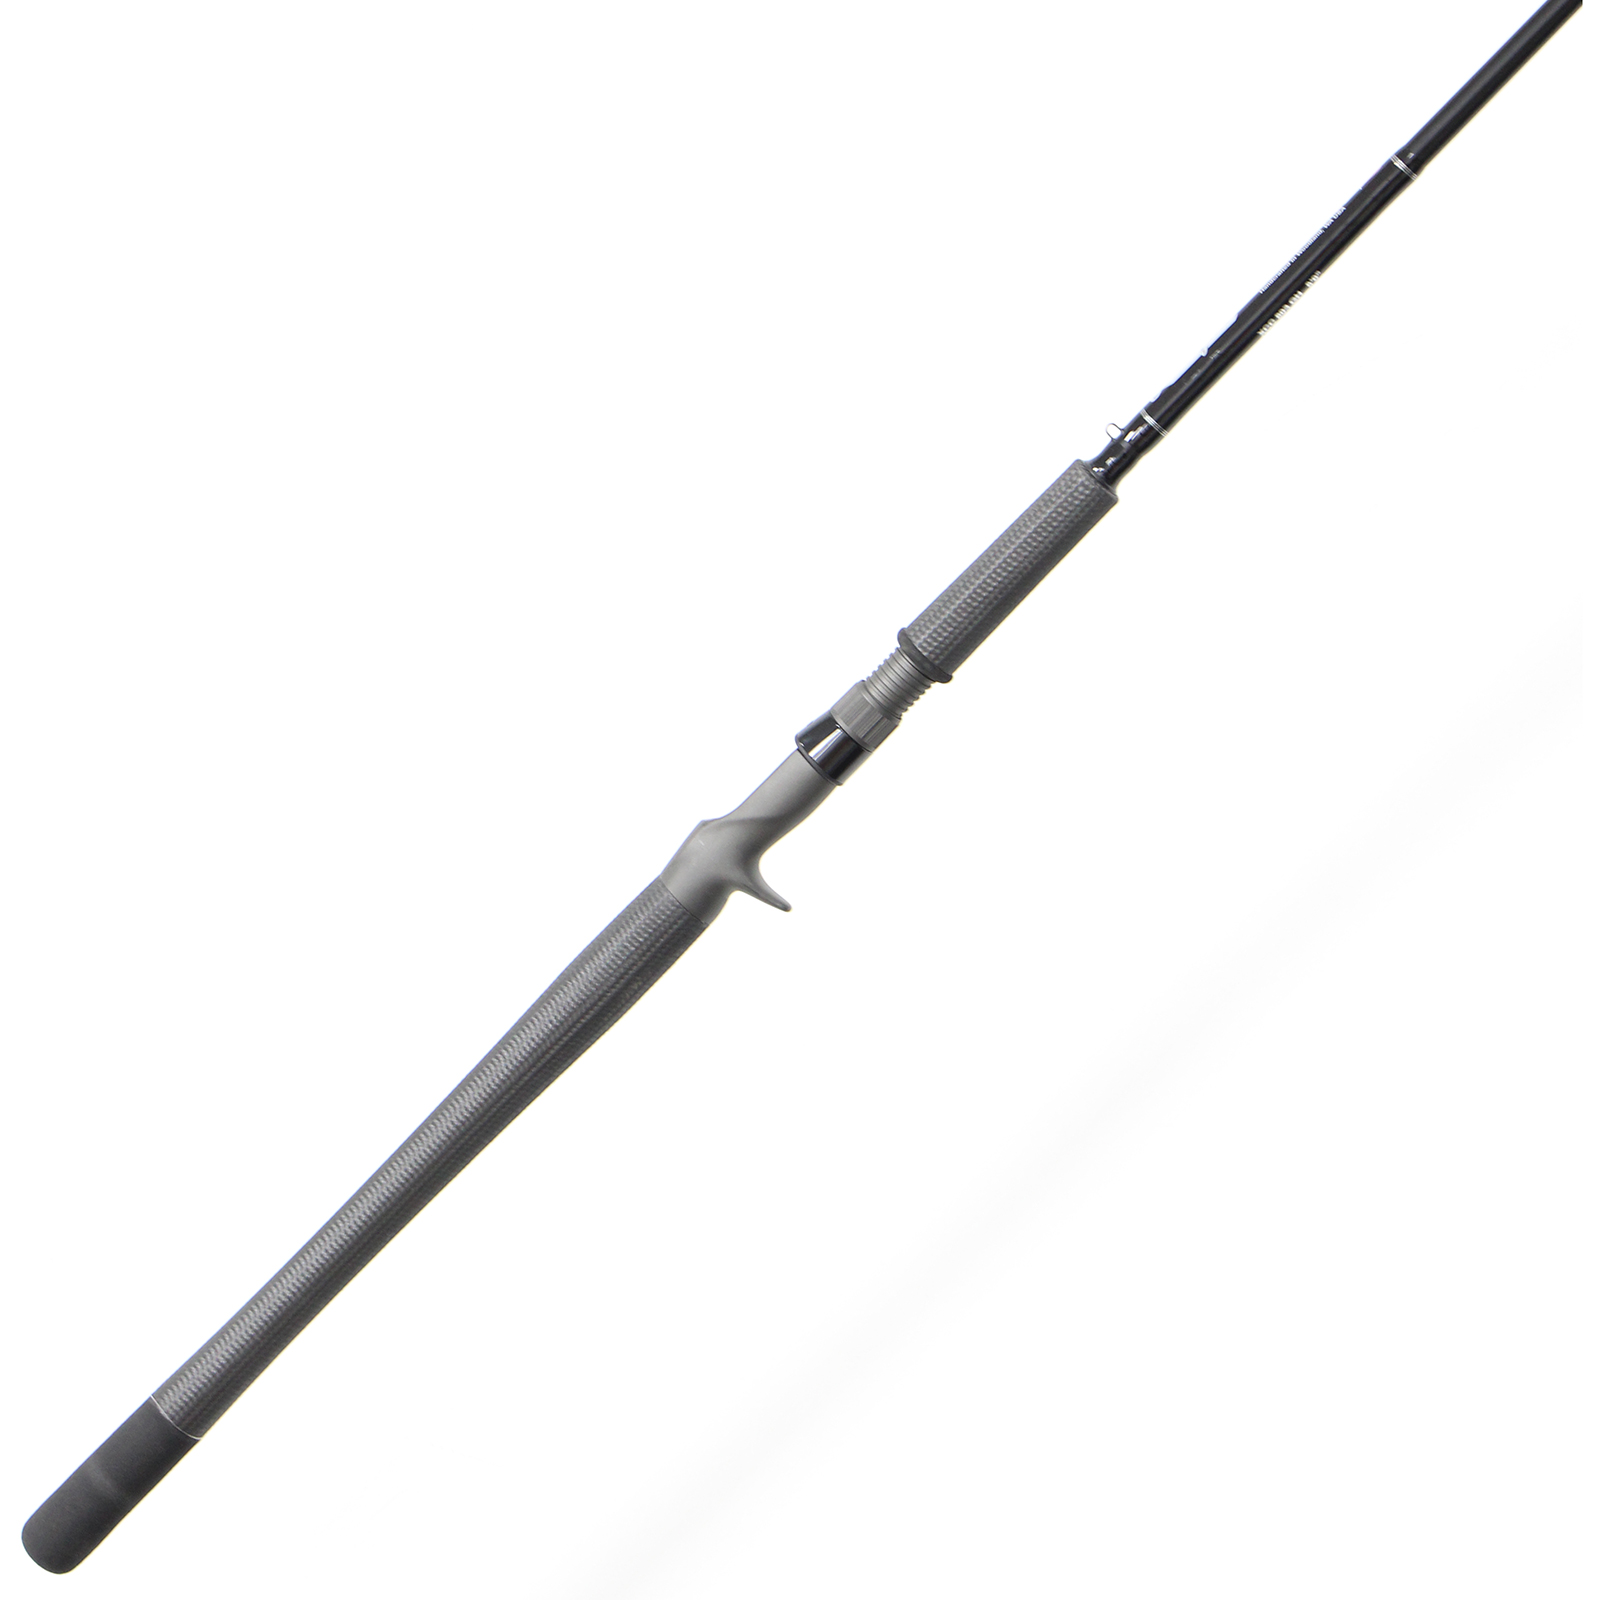 Lamiglas Salmon & Steelhead Rods: G1000 Series